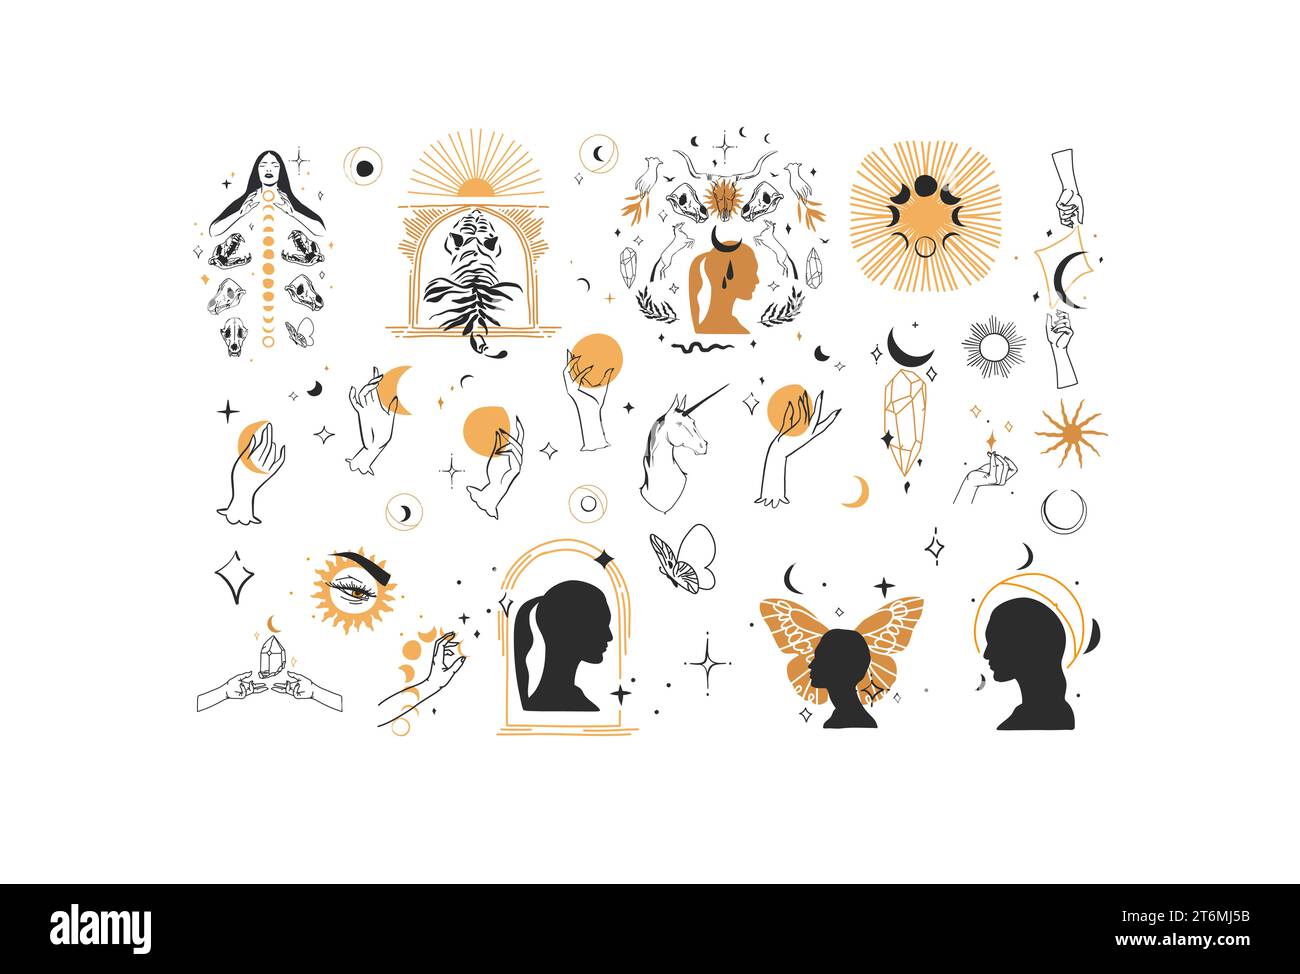 Ensemble de collection d'éléments d'illustration de ligne graphique abstraite de vecteur dessiné à la main, croissant magique, papillon, fleurs, animaux, lune et mains humaines isolées Illustration de Vecteur